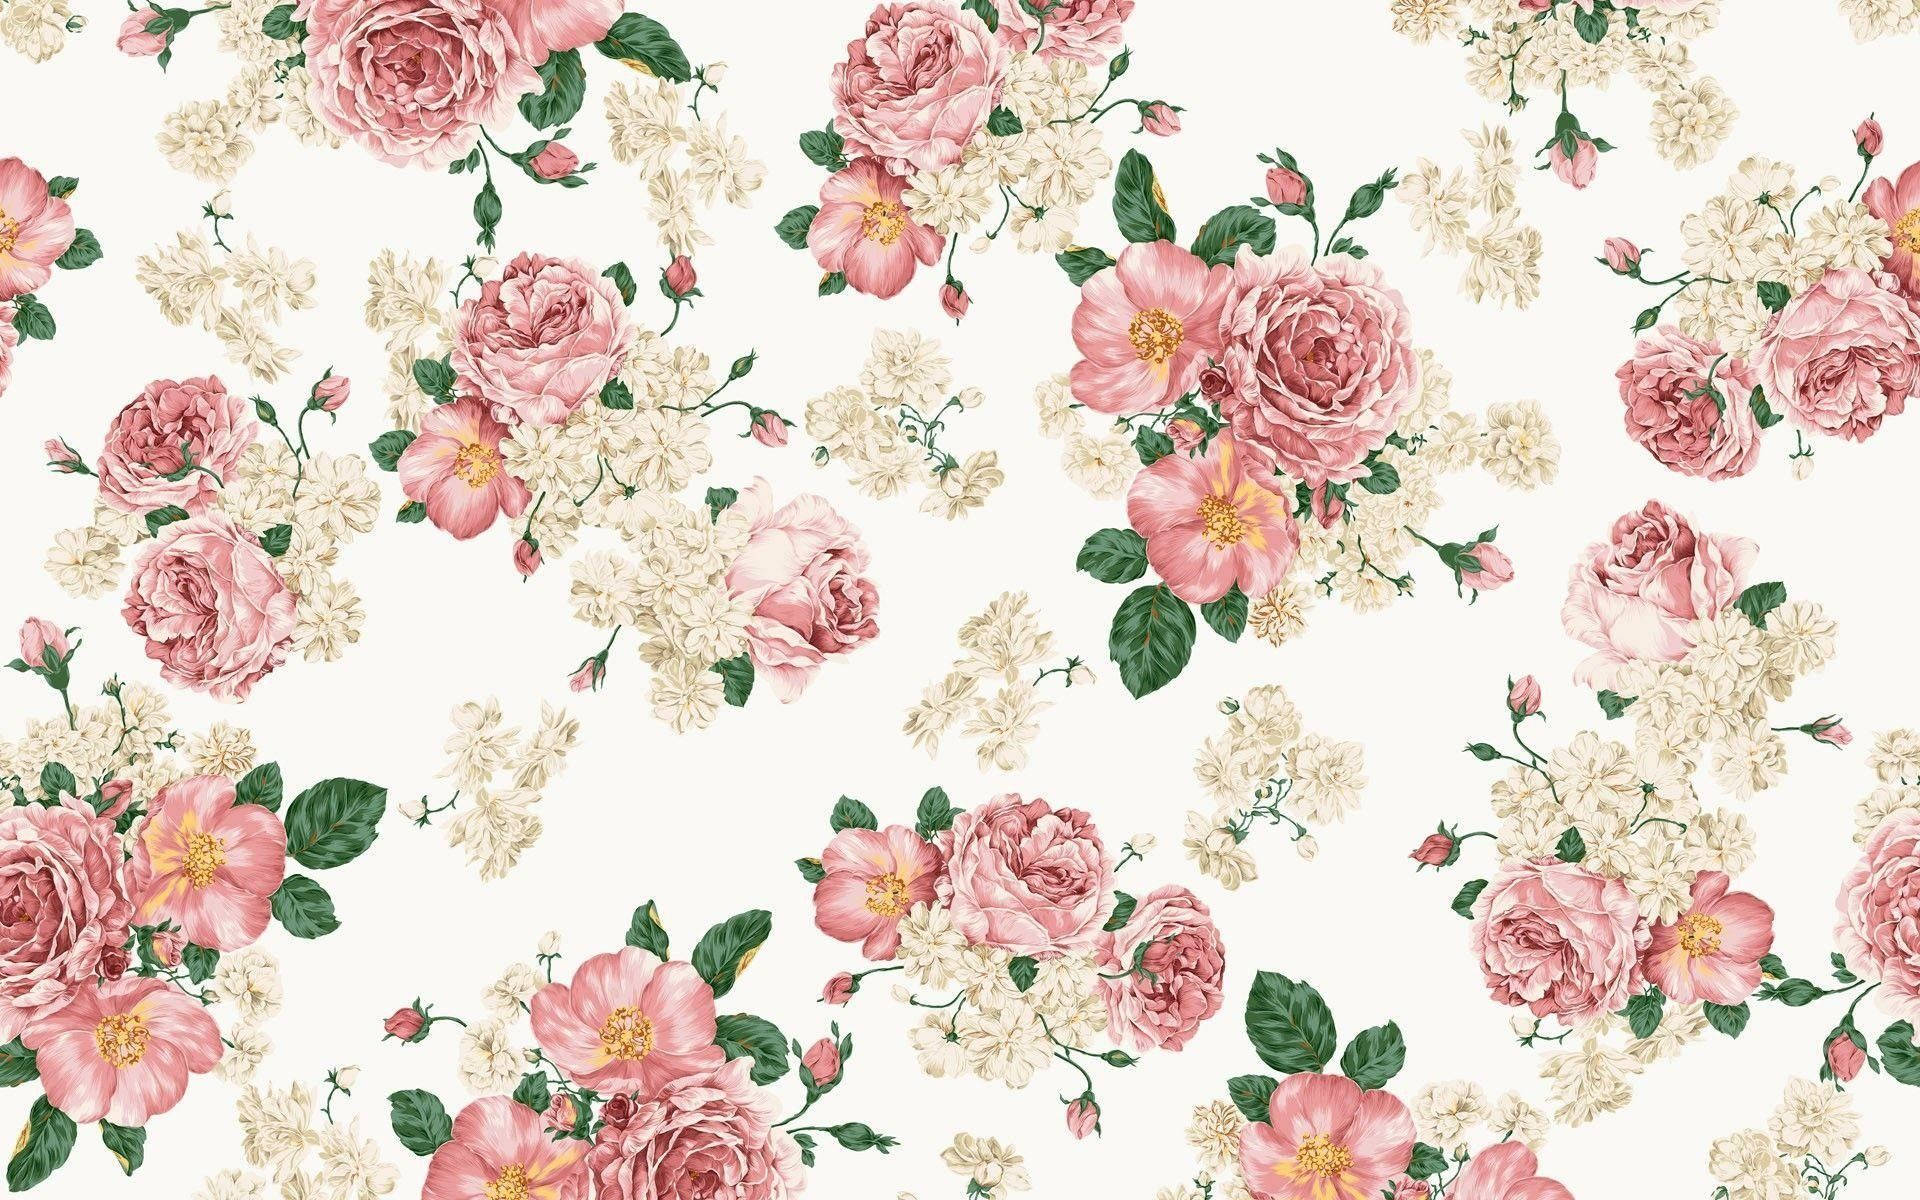 Roses On Floral Desktop Wallpaper